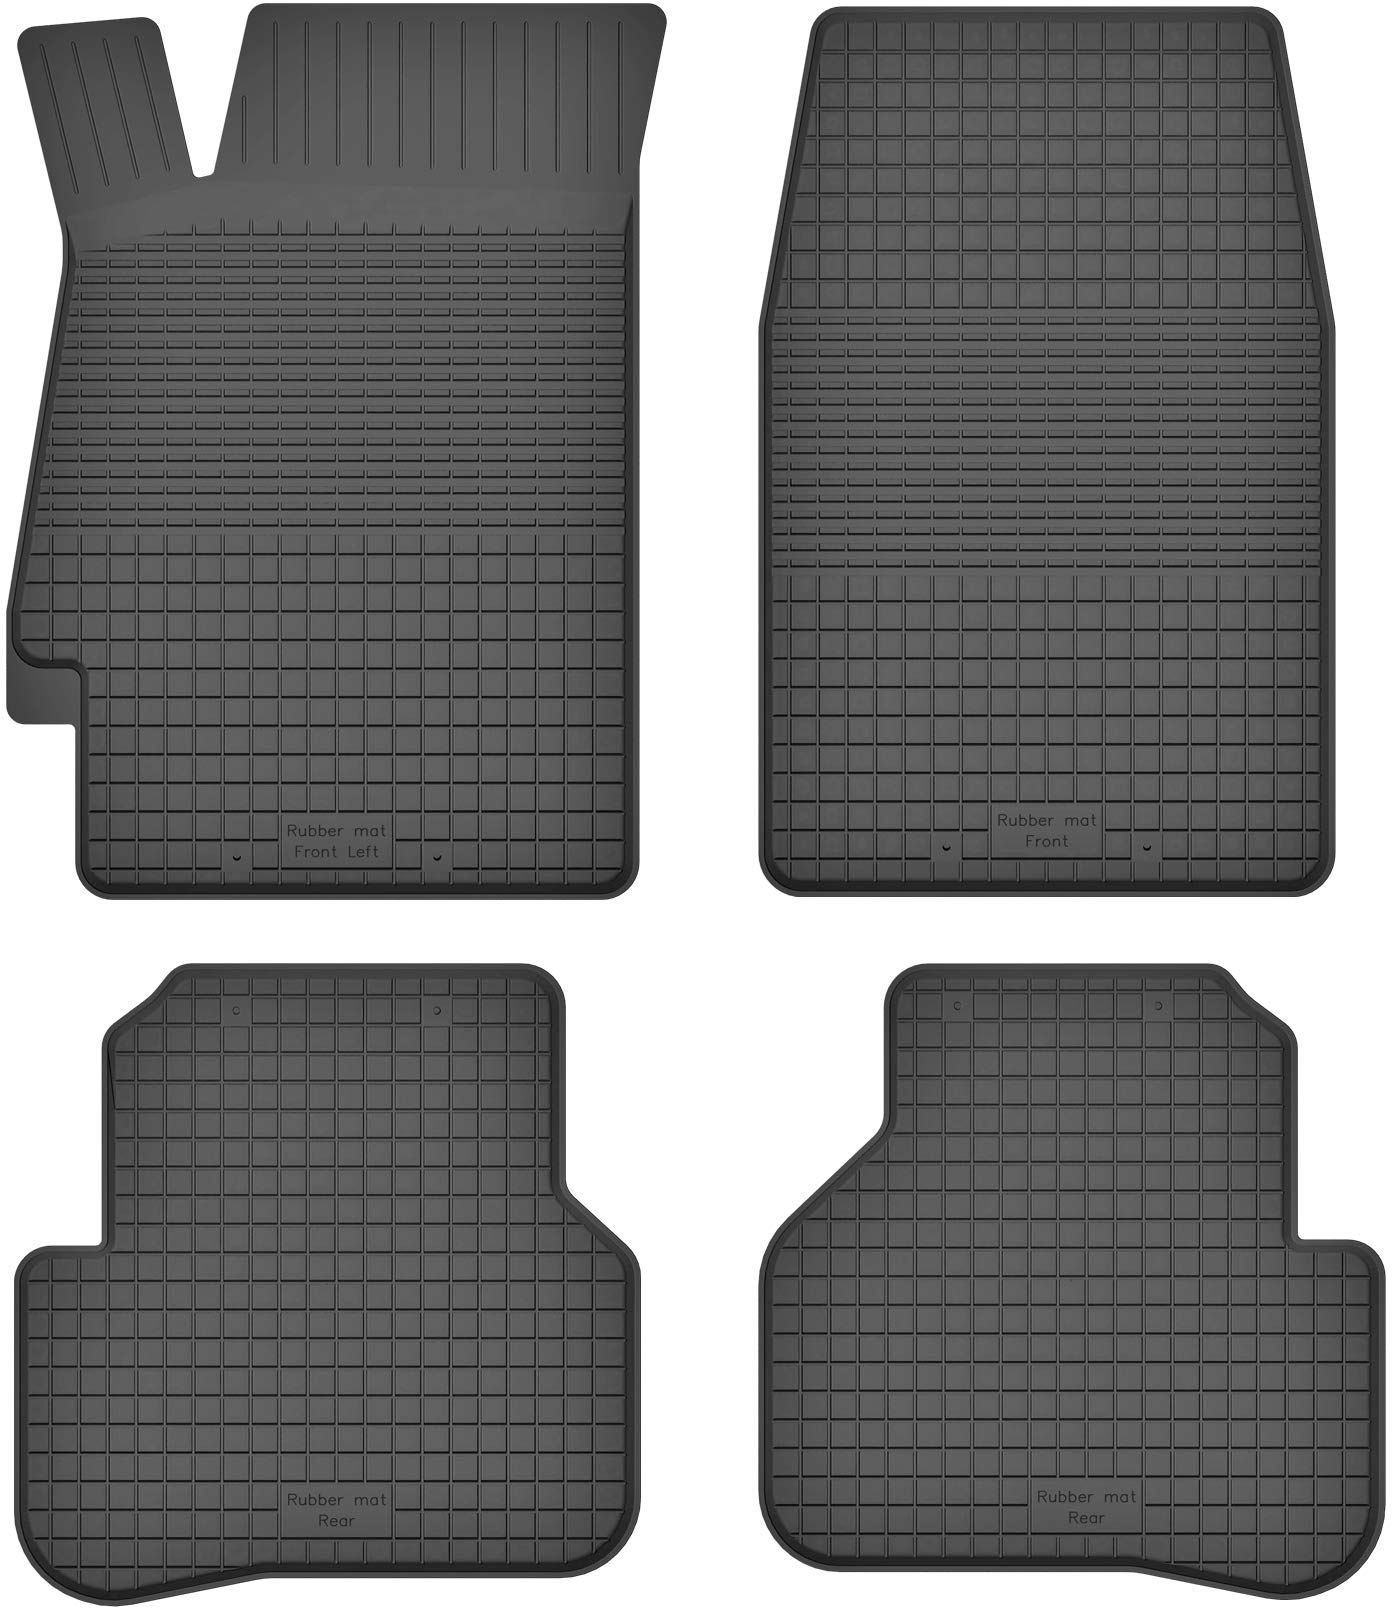 Gummimatten Gummi Fußmatten Satz für Honda Accord VI (1997-2002) - Hoher Rand 15 mm von Mobil-Fan